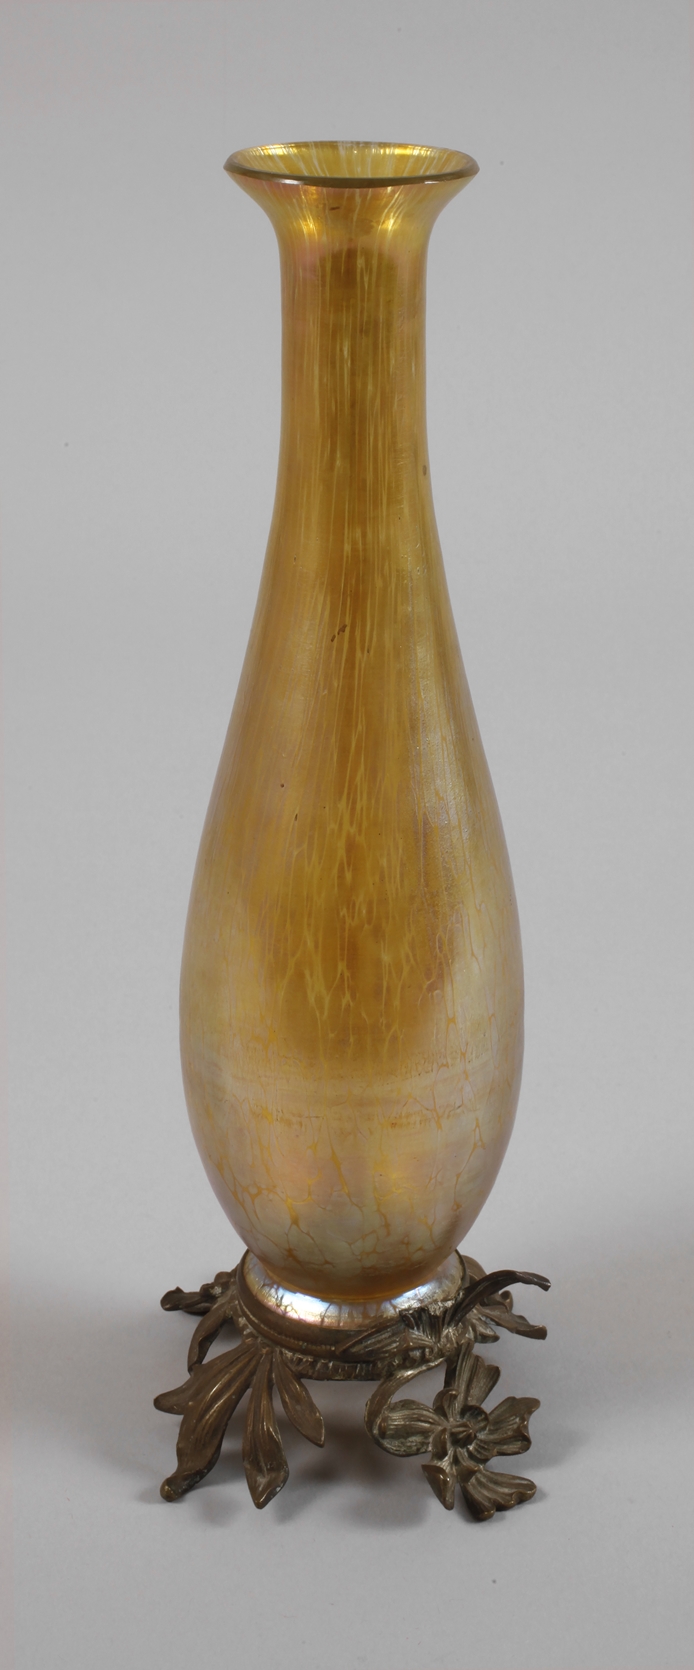 Lötz Wwe. vase with brass foot